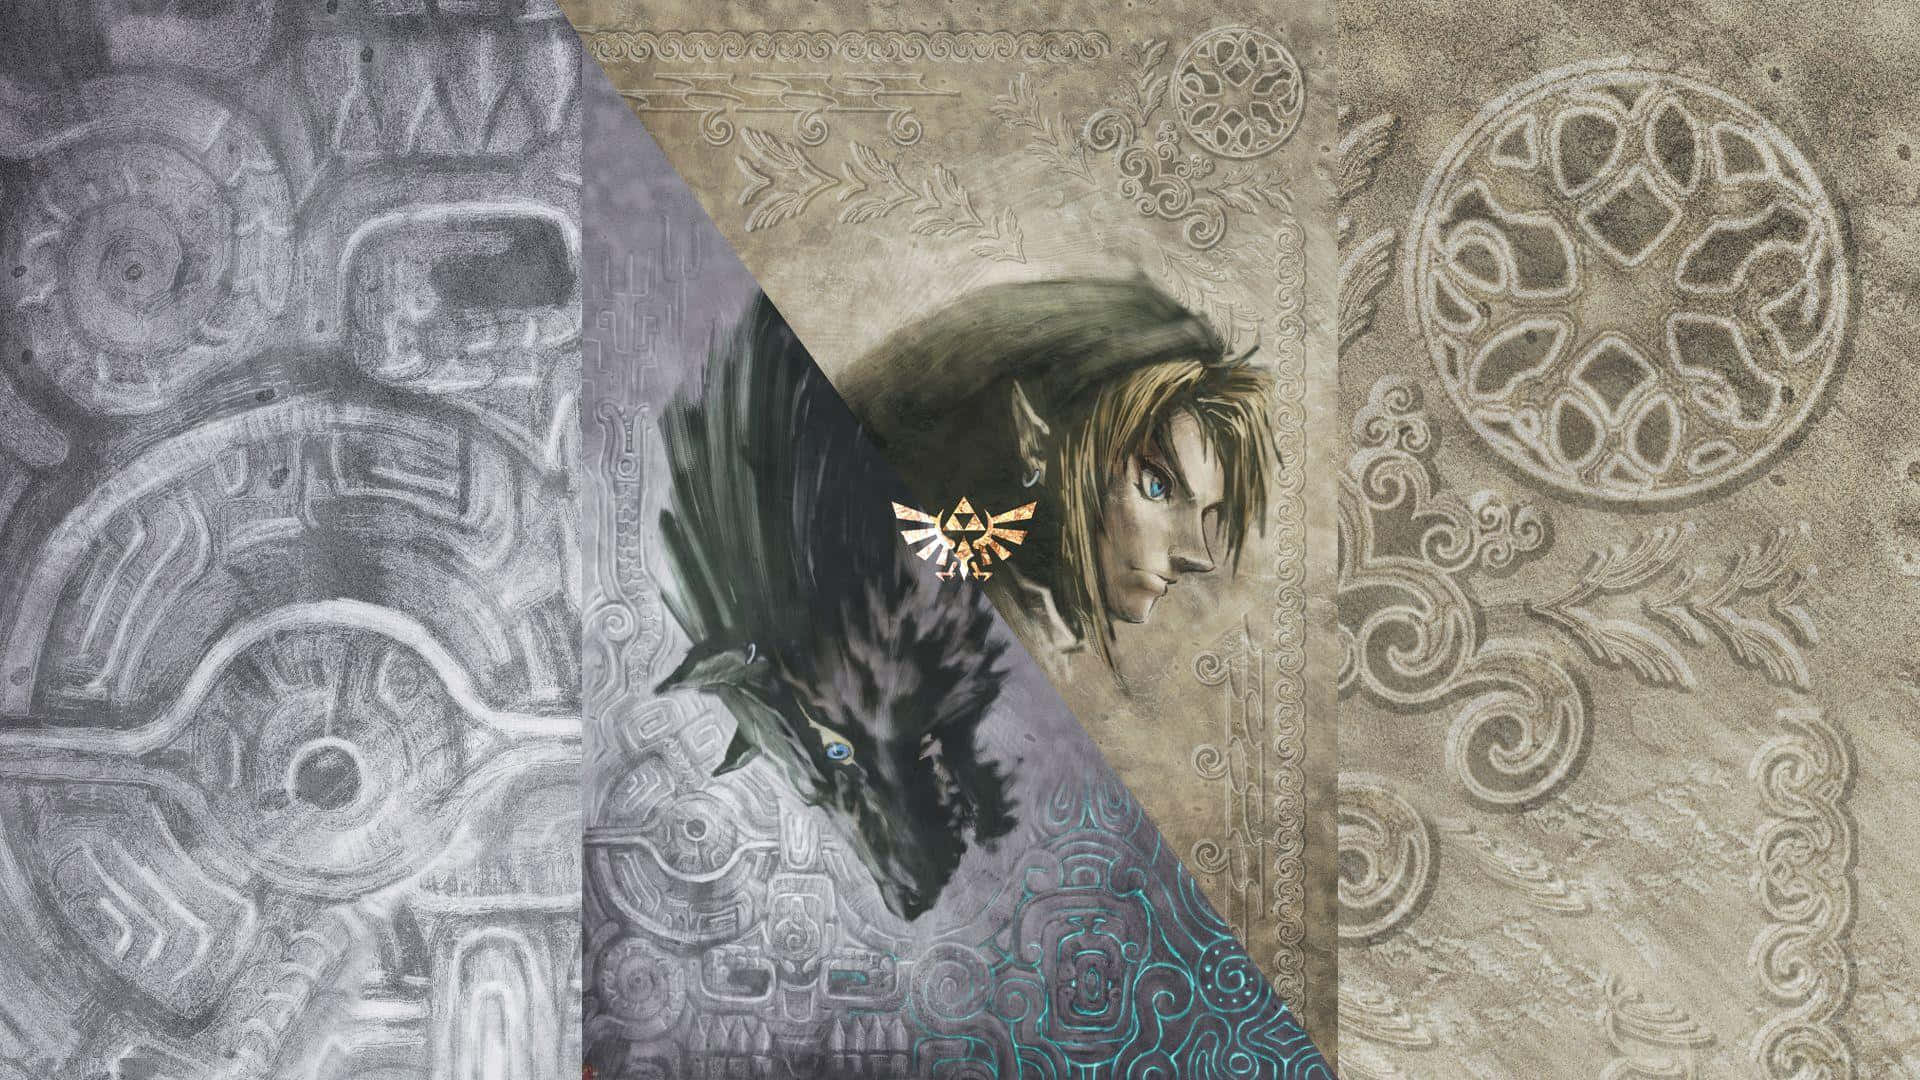 Følg Linkset For Opdag Den Fantastiske Verden Hyrule I The Legend Of Zelda: Twilight Princess. Wallpaper